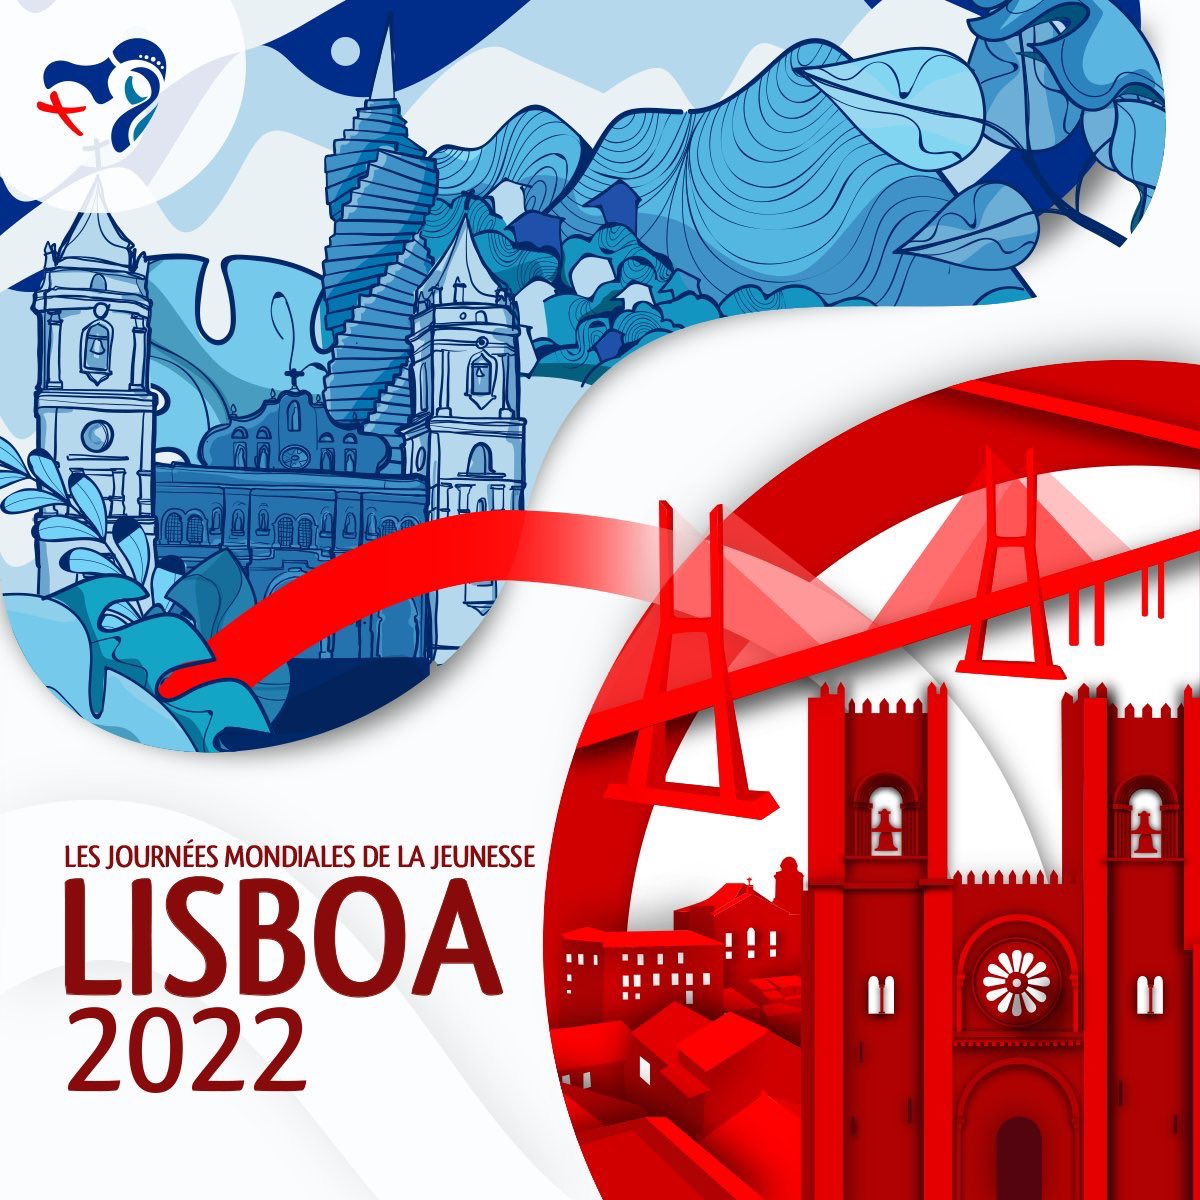 “Marie se leva et partit avec empressement” (cf. Lc 1,39)

Le #Pape a dévoilé le thème des #JMJ de #Lisbonne. 
Rendez-vous au #Portugal en 2022 !
#JMJ2022 #Lisbon2022 #Lisbonne2022 #Lisboa